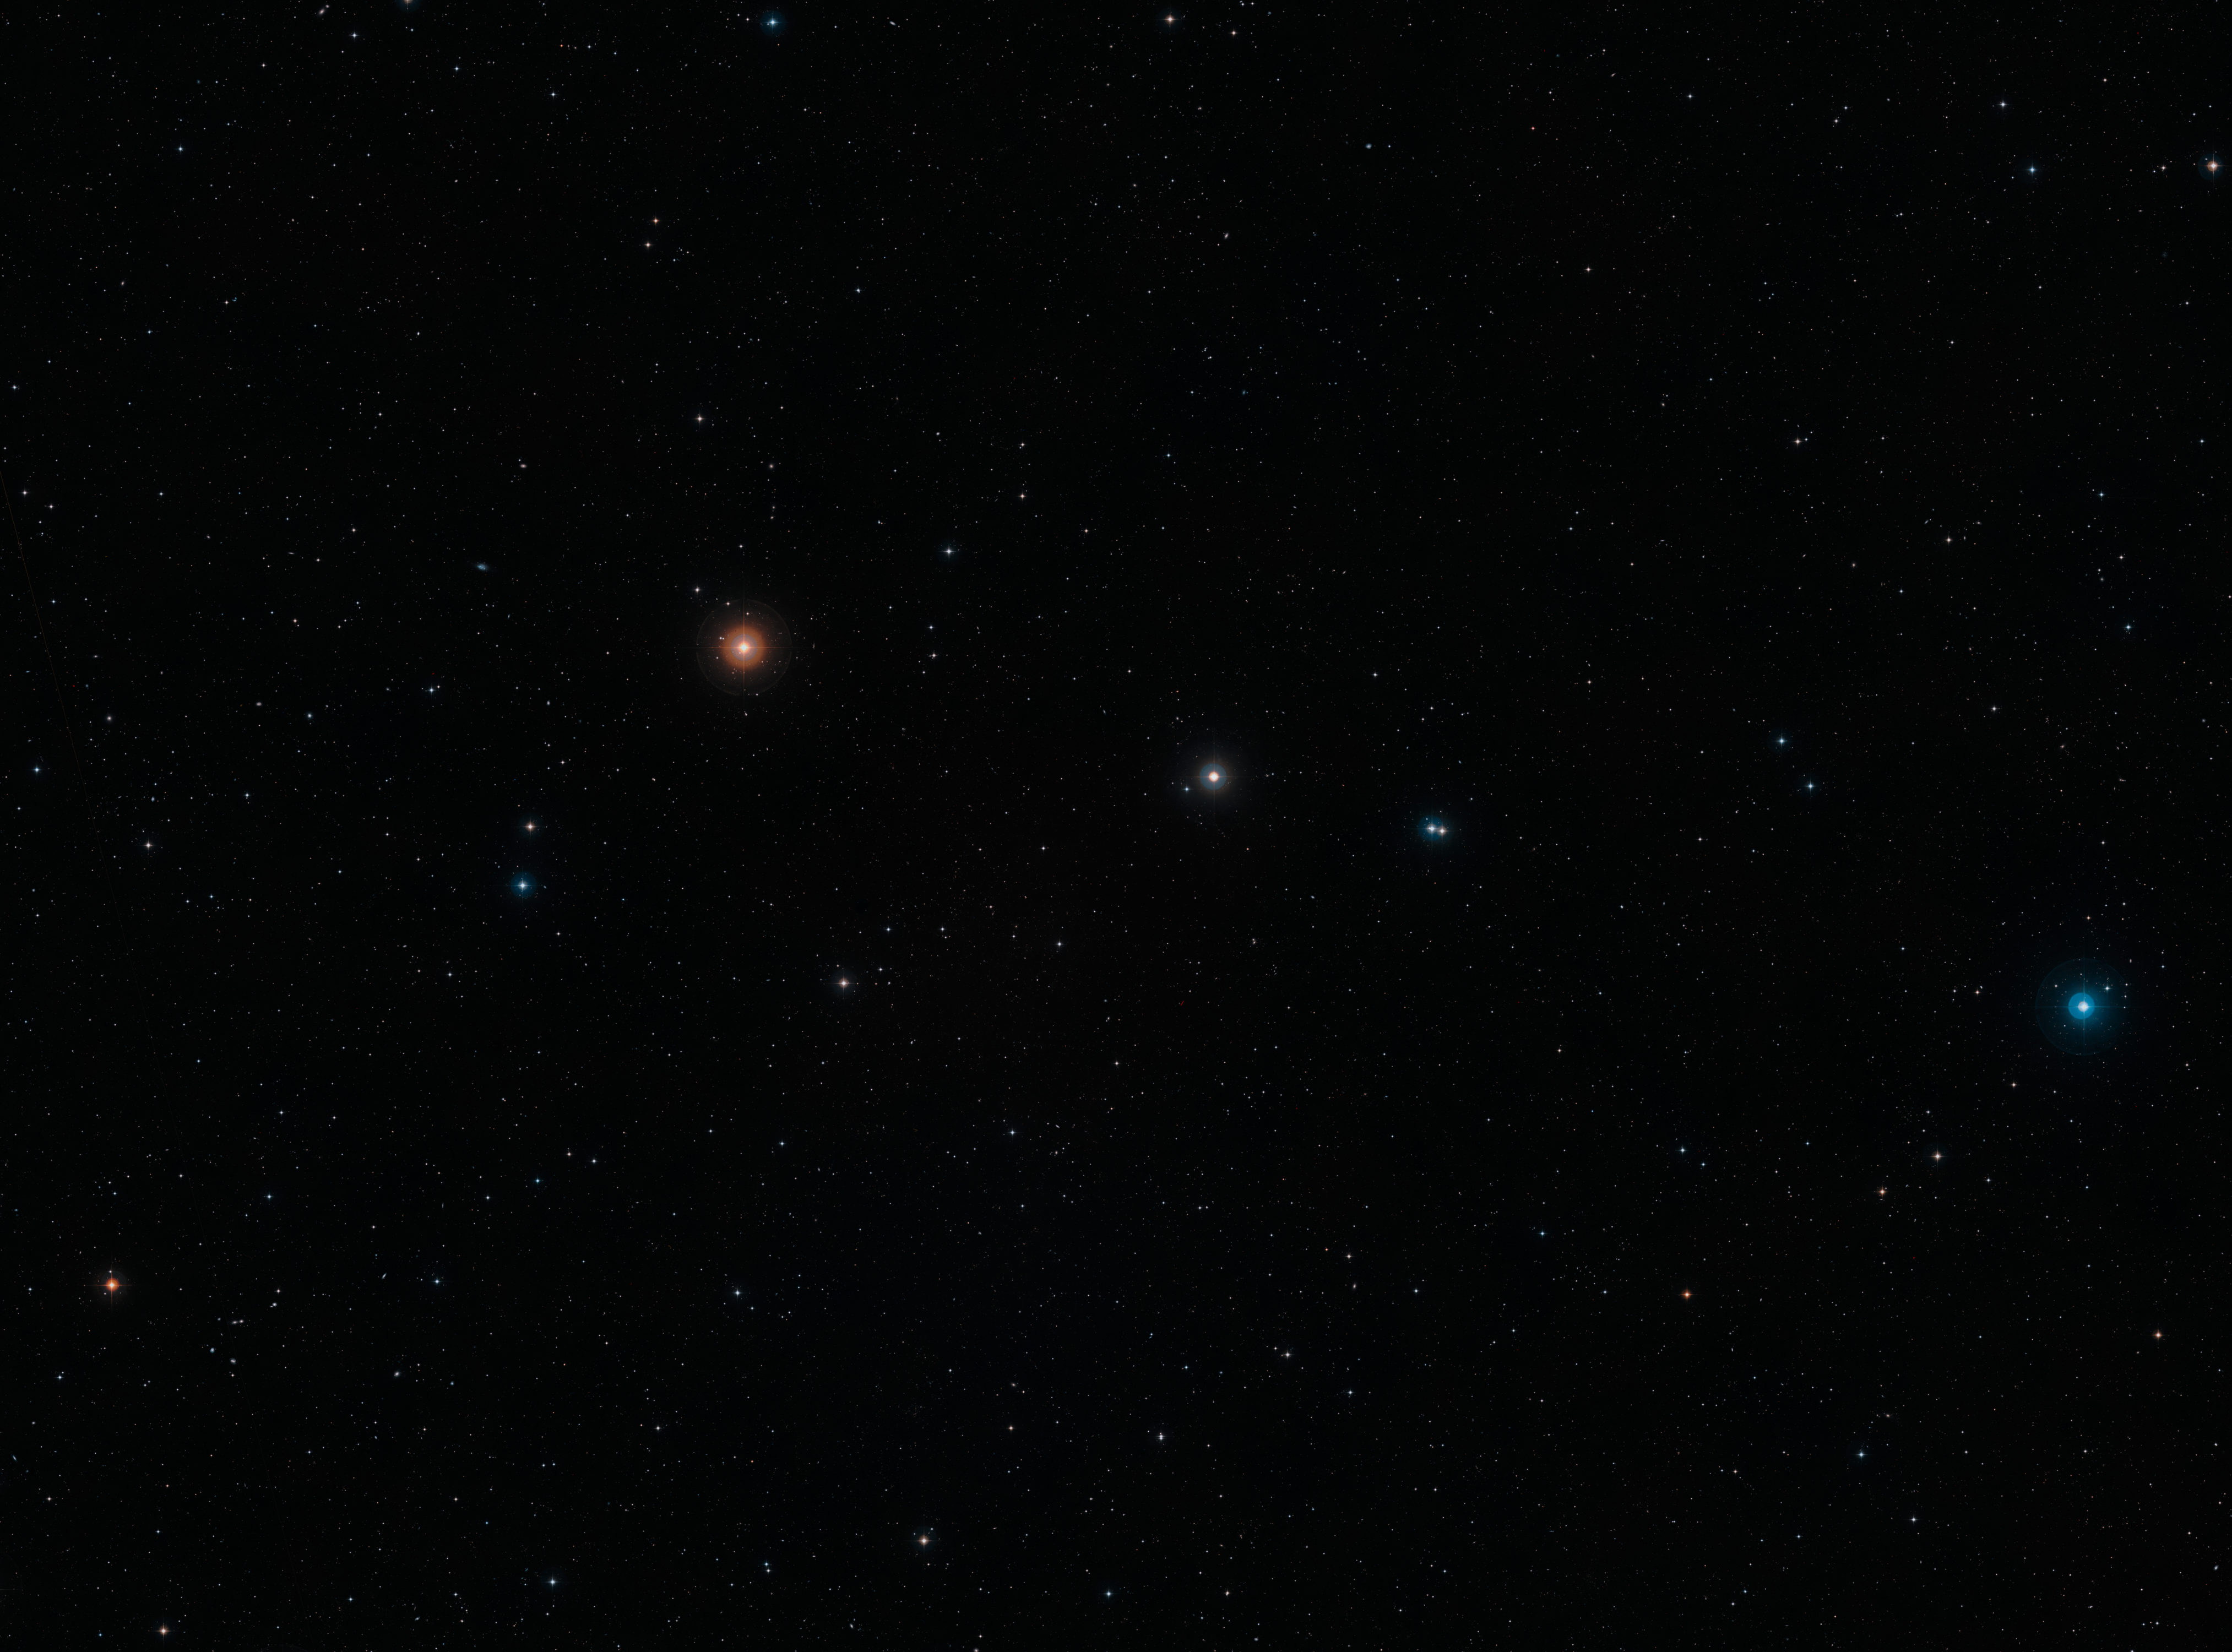 Esta imagen de campo amplio en luz visible de la región del cielo donde se encuentra la remota galaxia NGP-190387 se creó a partir de imágenes del Digital Sky Survey 2. La galaxia, situada tan lejos que su luz tardó más de 12 mil millones de años en llegar hasta nosotros, está cerca del centro de la imagen. Aunque no pueden verse en esta imagen, muchas galaxias más cercanas se pueden observar con una vista de campo amplio. Crédito: ESO/Digitized Sky Survey 2. Acknowledgement: Davide De Martin